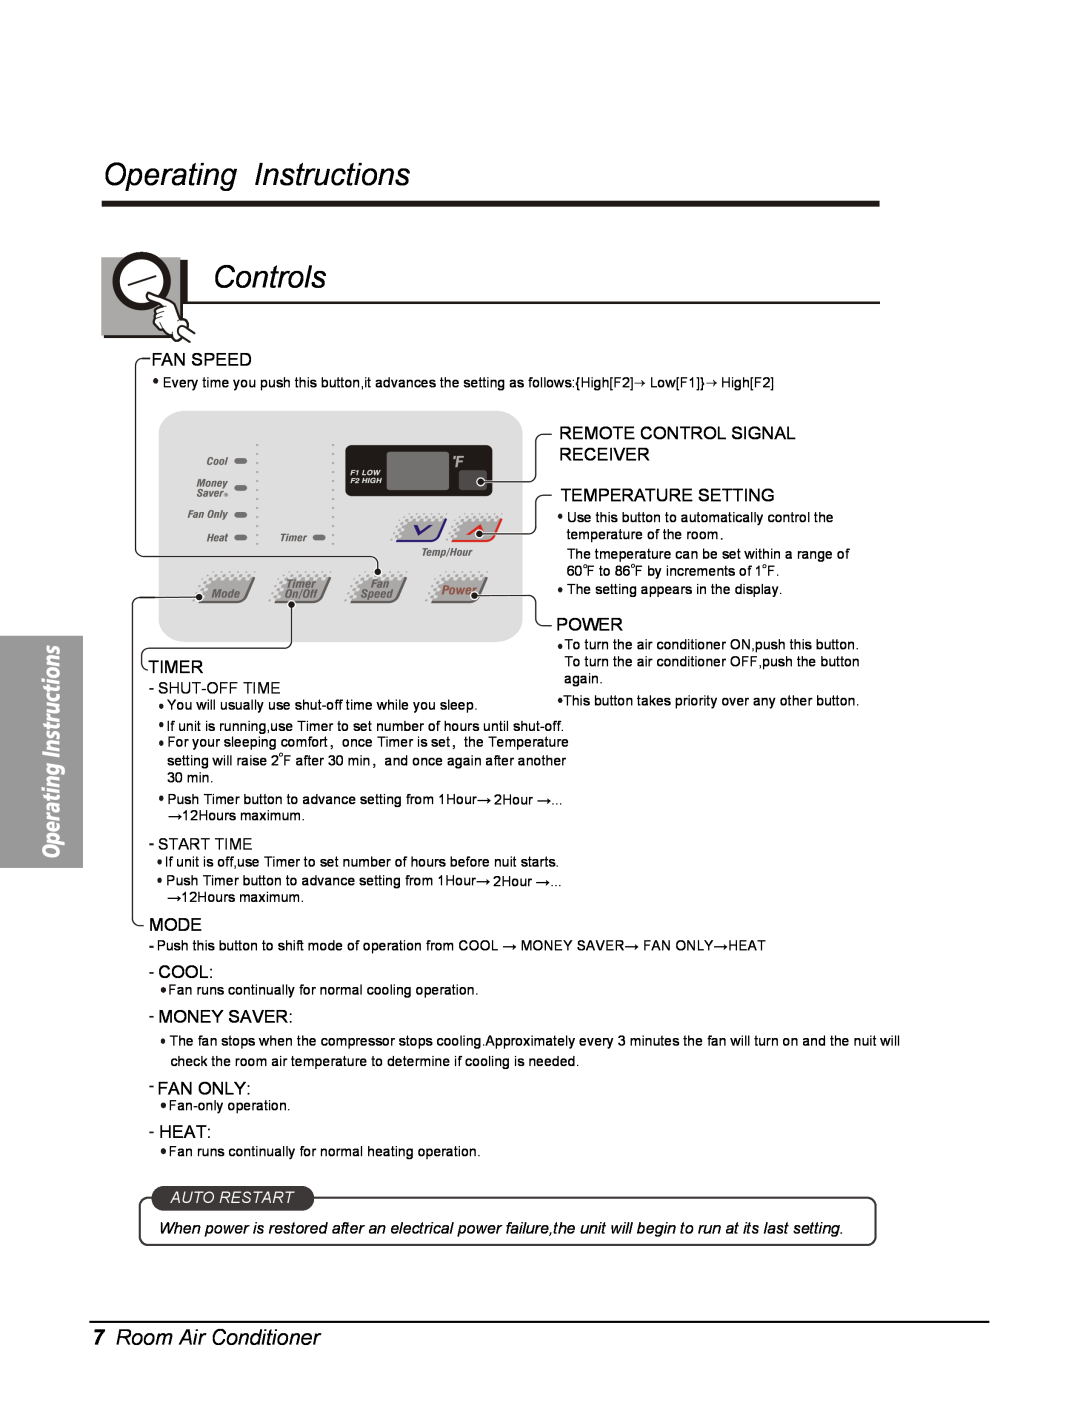 Friedrich UE10C33, UE12C33, UE08C13 manual 7Room Air Conditioner, Operating Instructions Controls 